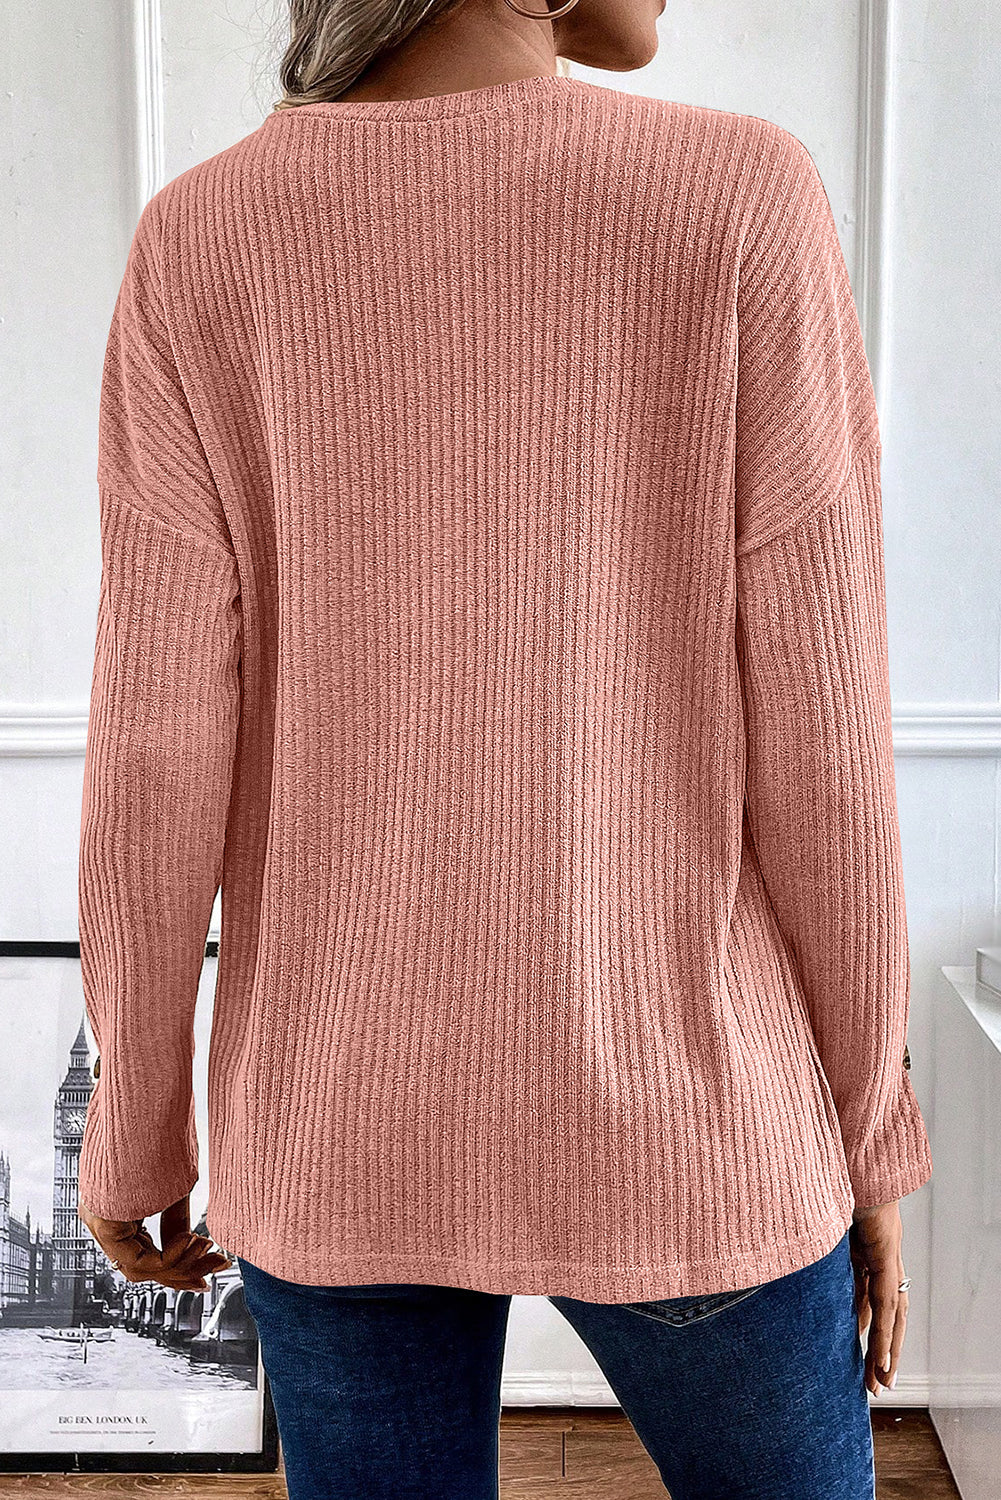 Ružičasto-smeđa pletena majica s rebrastom teksturom